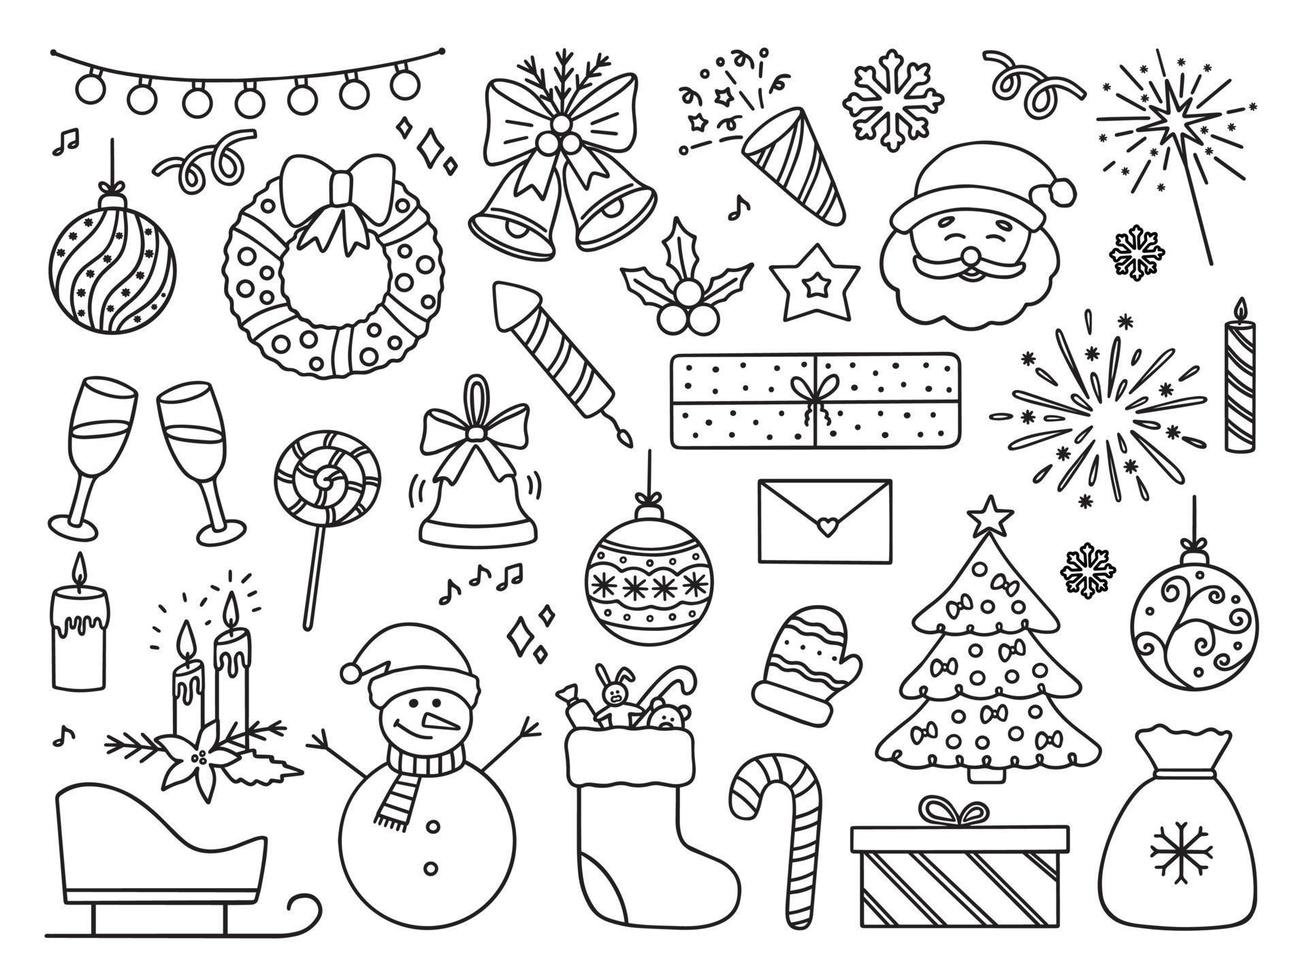 conjunto dibujado a mano de iconos de garabatos navideños. fiesta de año nuevo en estilo boceto. ilustración vectorial aislado sobre fondo blanco vector